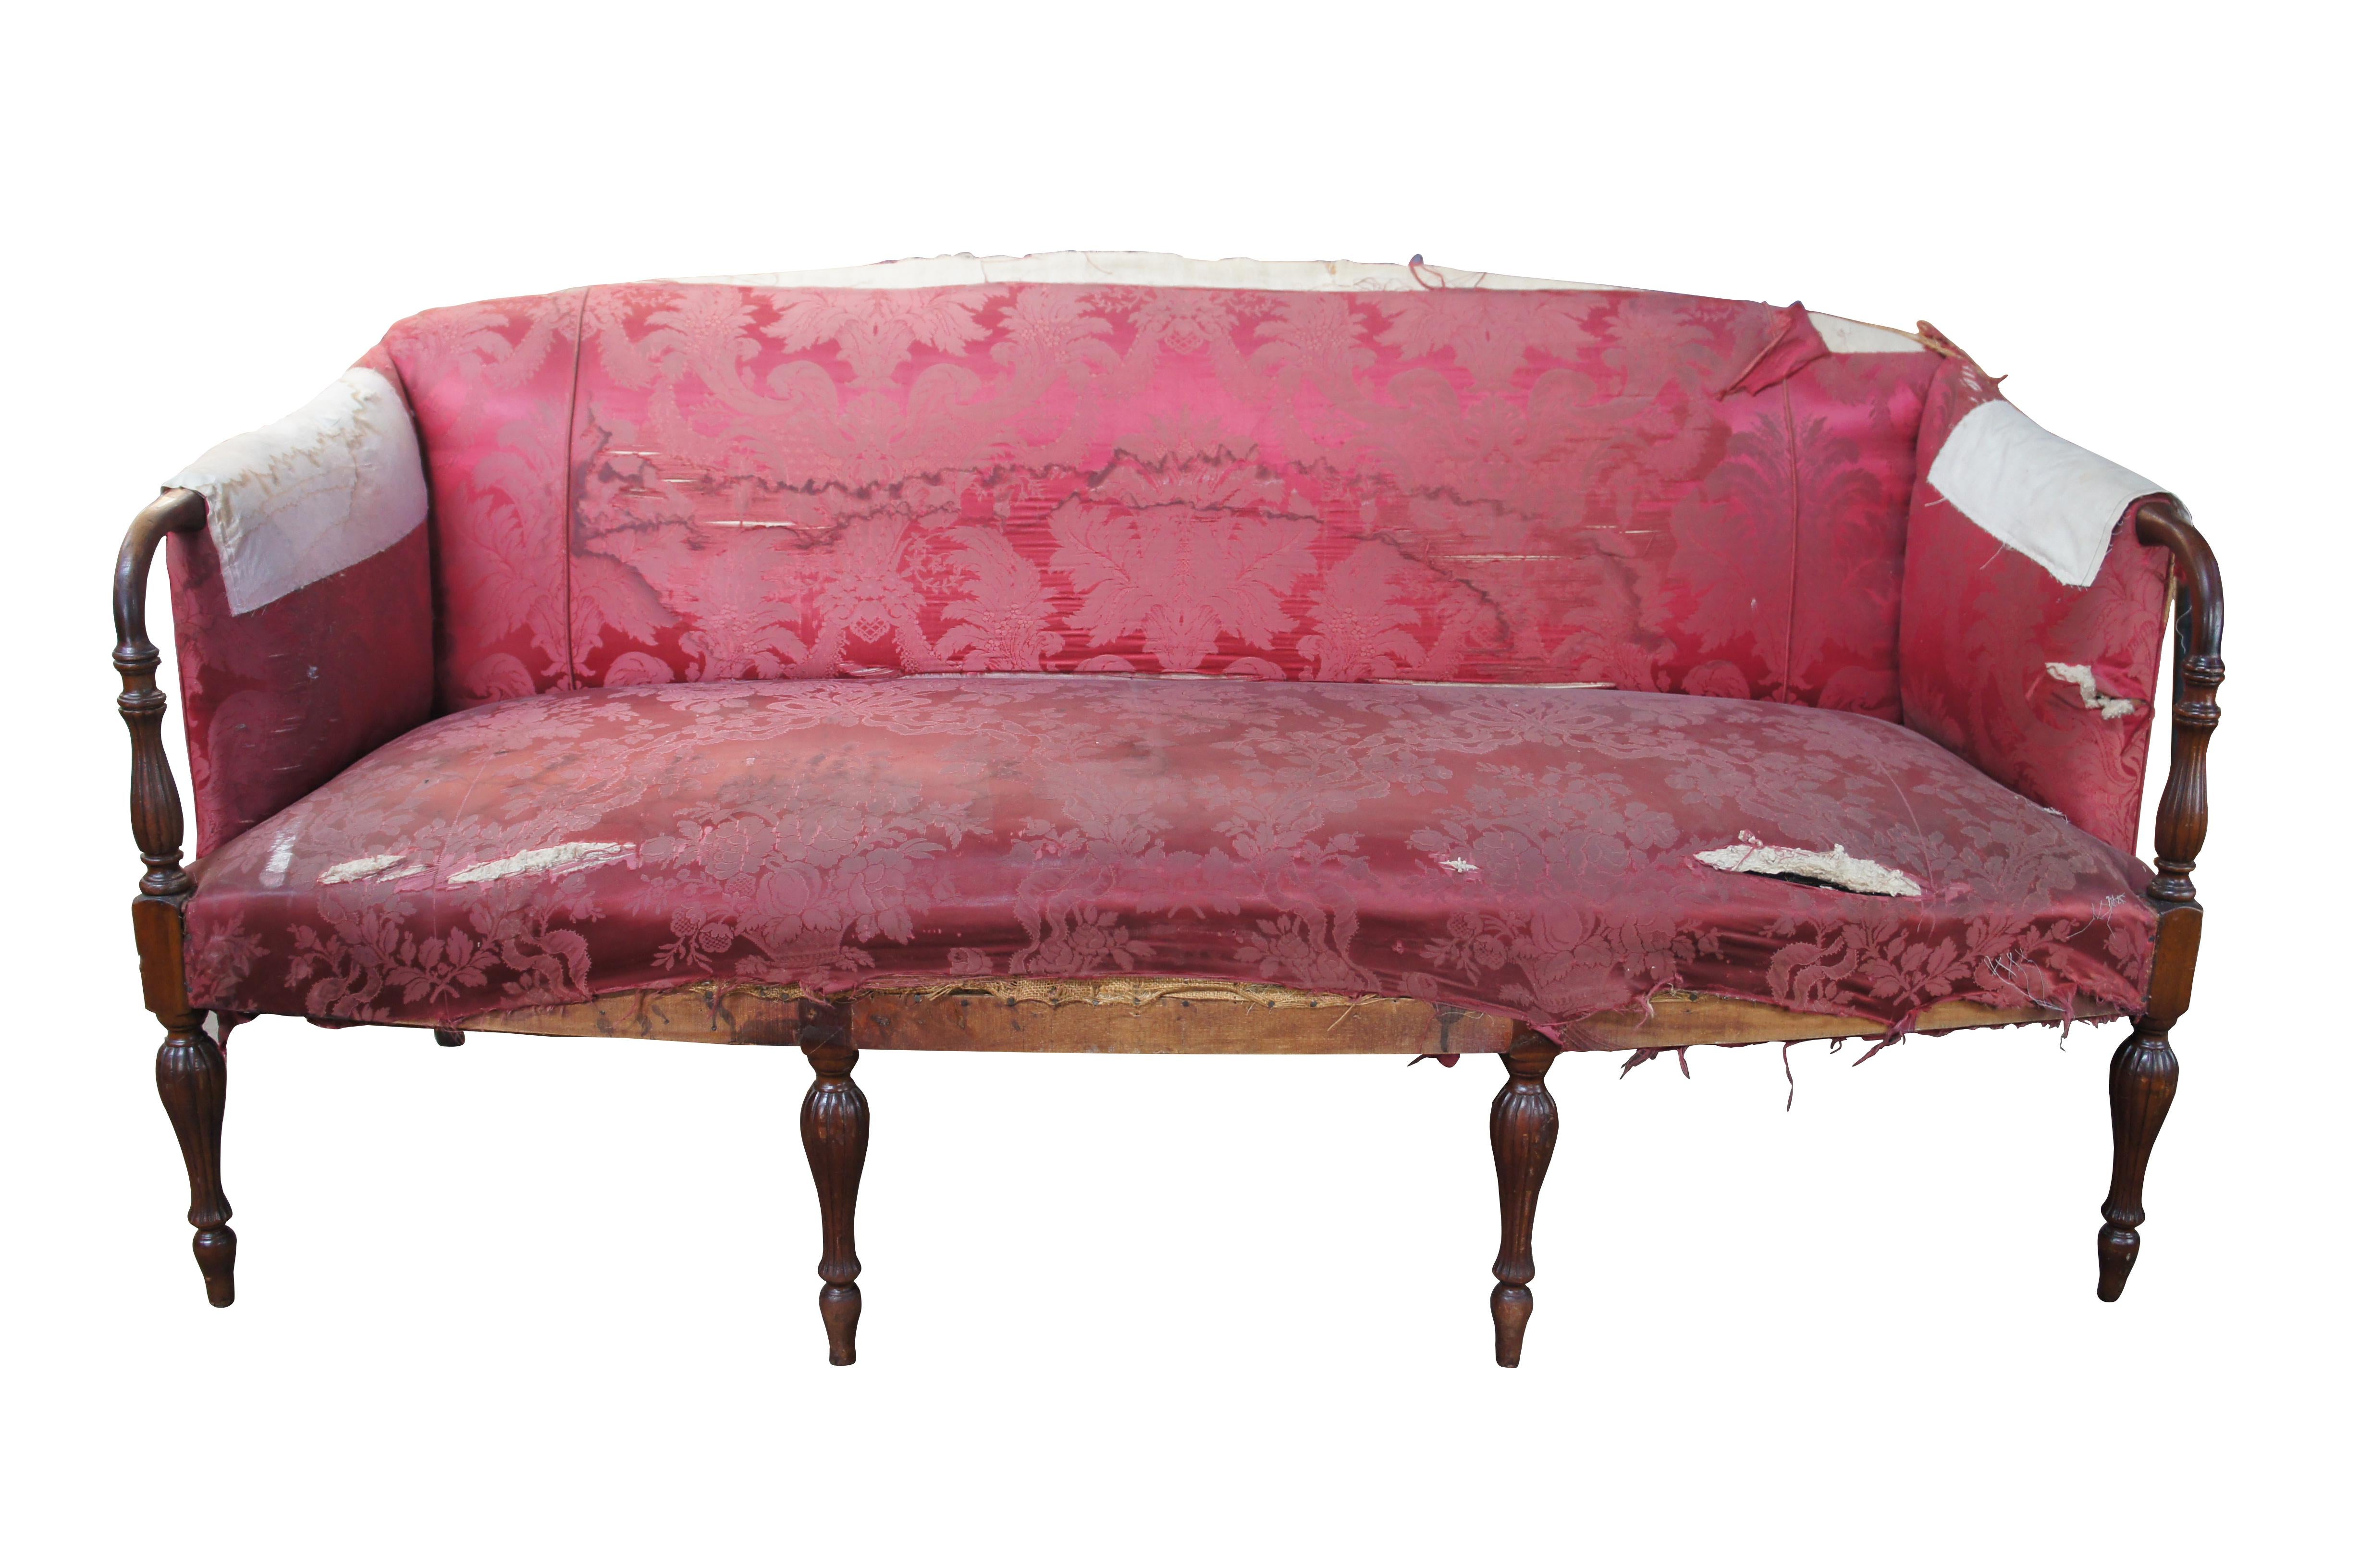 Ein sehr schönes amerikanisches geschnitztes Mahagoni-Sofa aus der Bundeszeit, um 1830. Der Rahmen besteht aus einer Bogenfront mit abgeschrägten Armen, die zu geriffelten Stützen führen. Das Sofa wird von gedrechselten und geriffelten Beinen an der